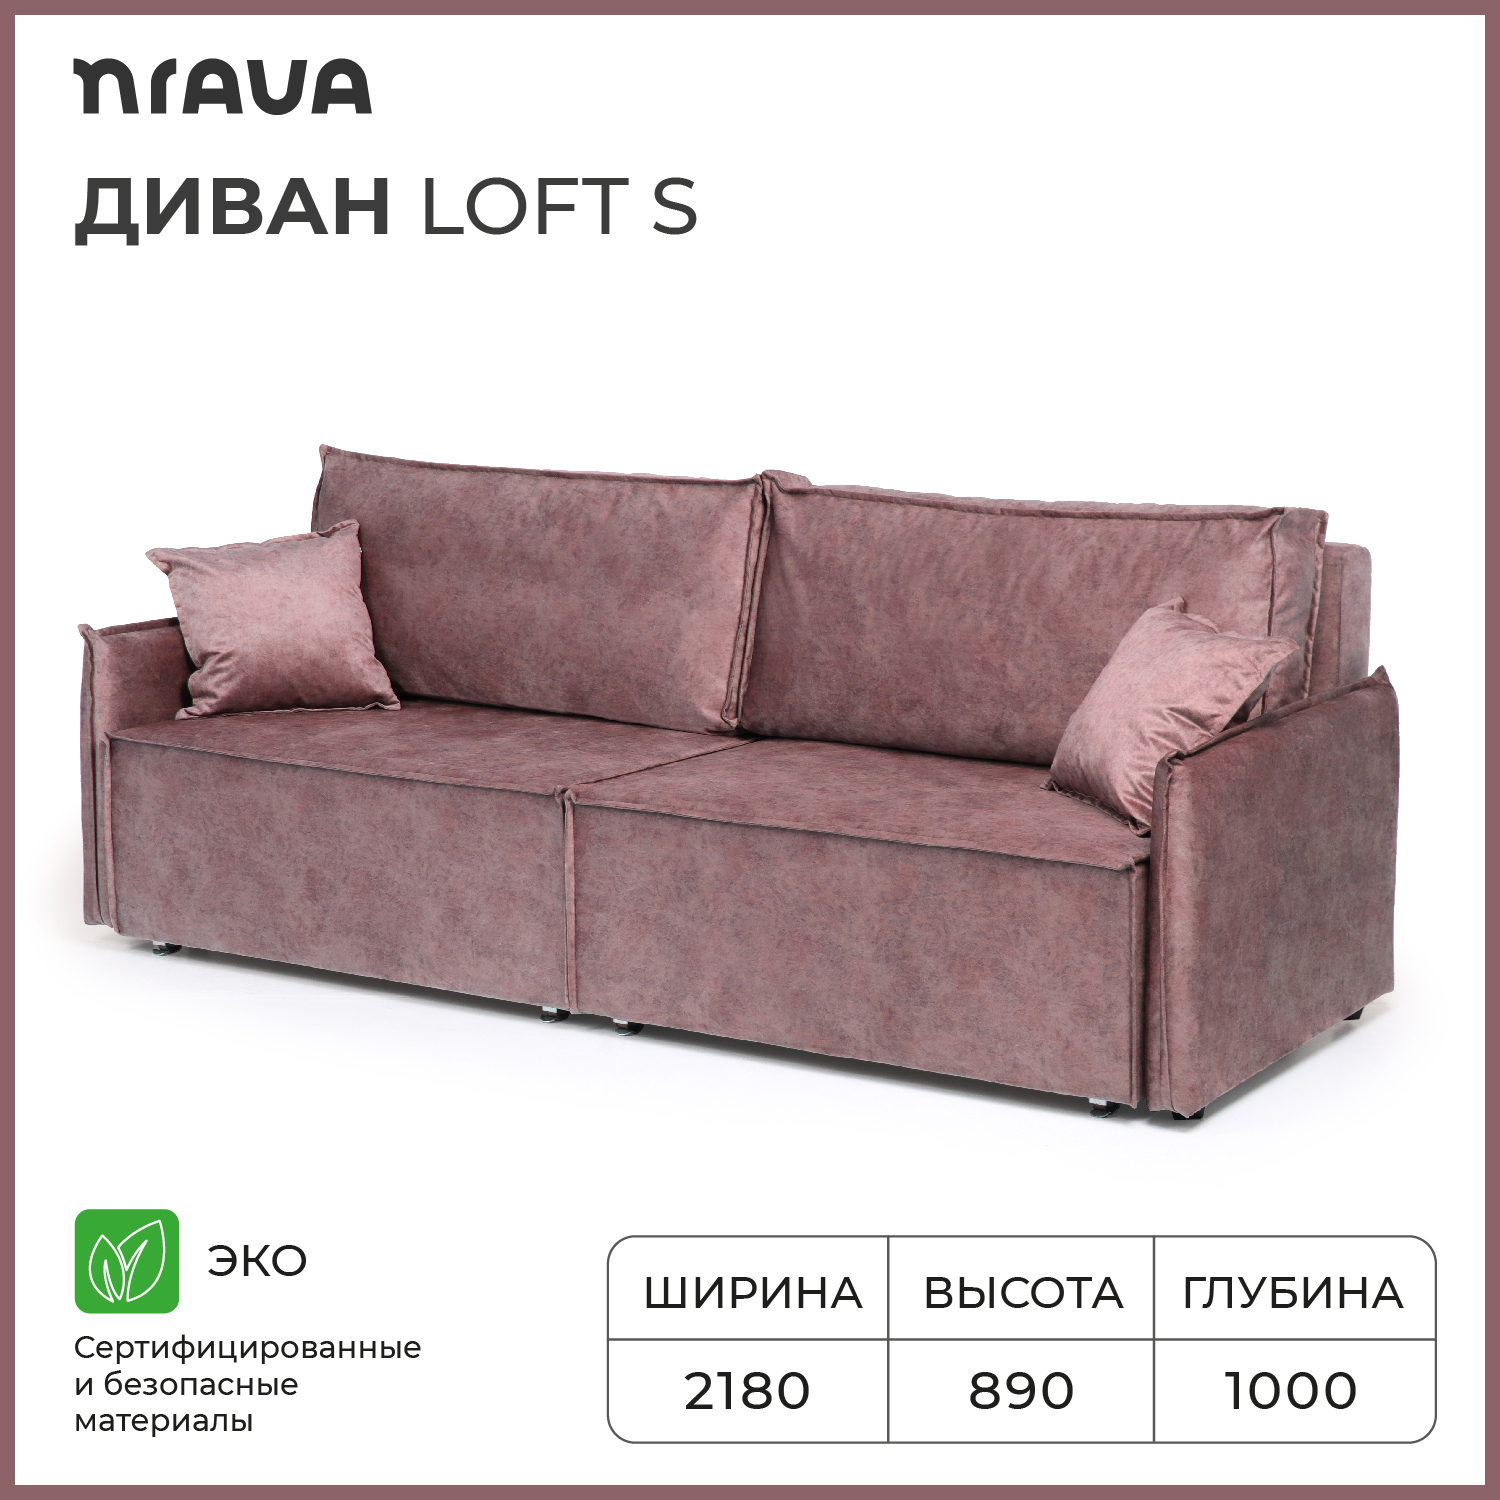 Диван-кровать NRAVA Loft S 2180х1000х890